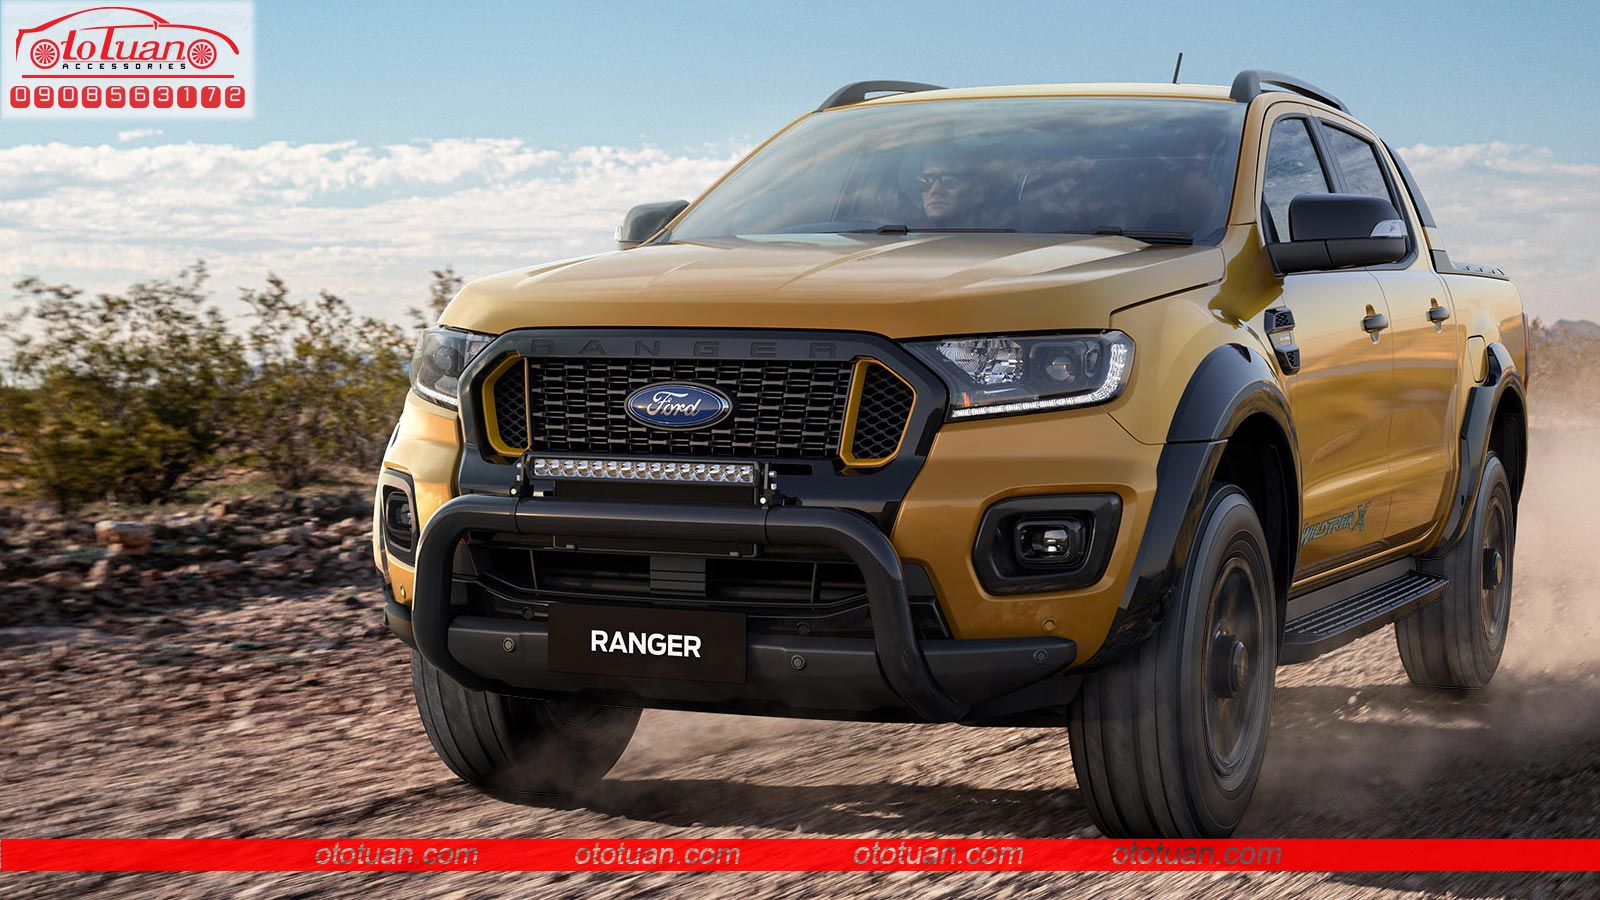 Tổng Hợp Đồ Chơi, Phụ Kiện Độ Đẹp Cho Xe Ford Ranger 2021 - 2022 : Ôtô Tuấn